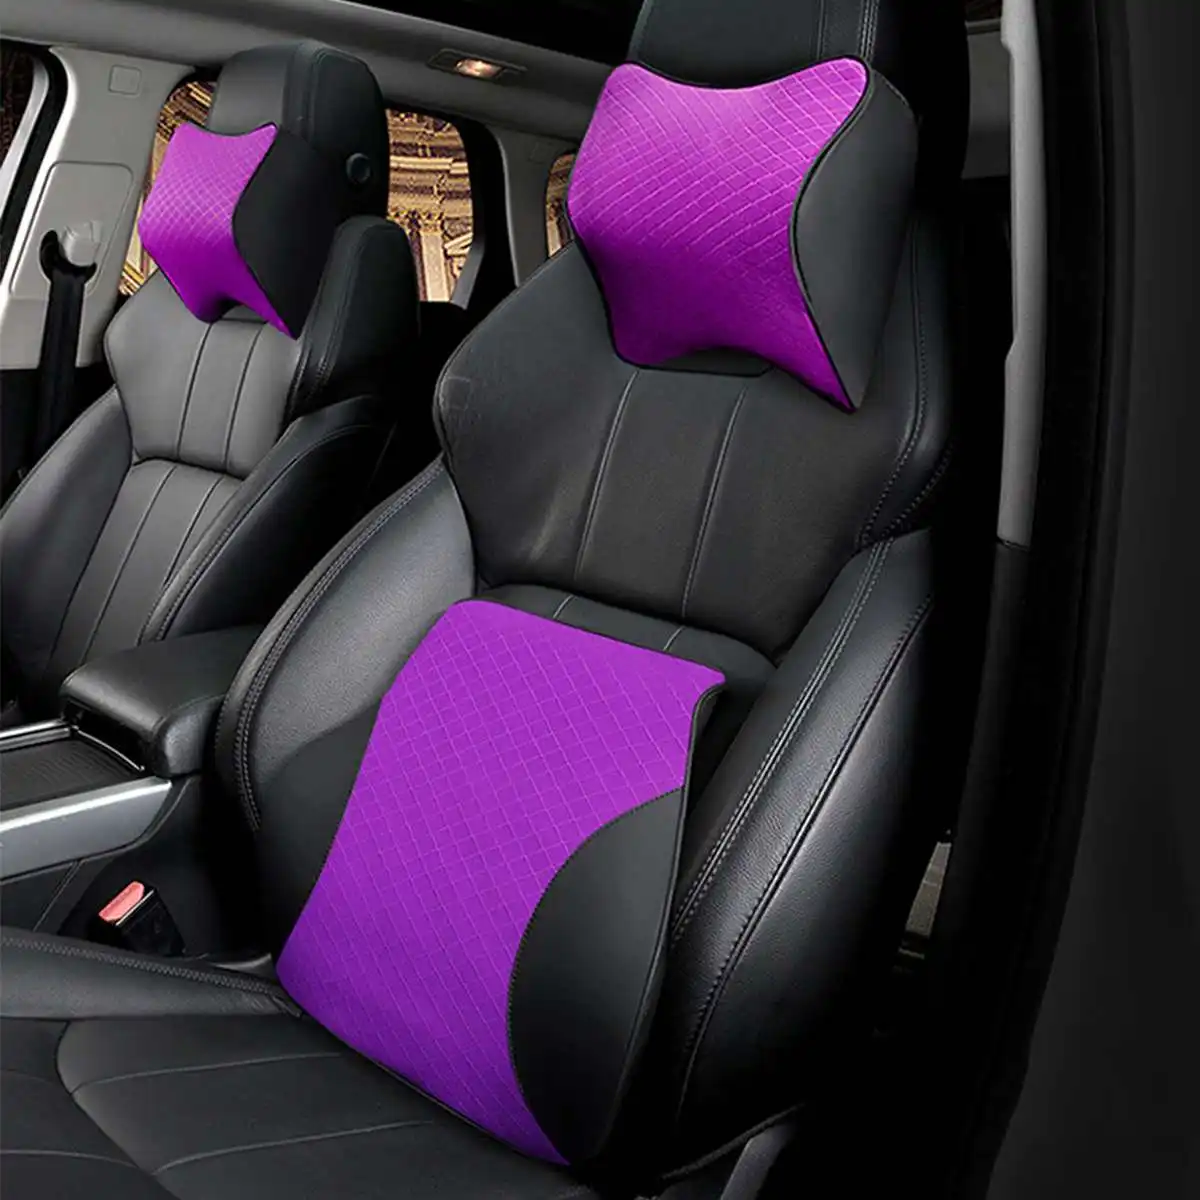 2 шт. автомобильные подушки с объемным эффектом Памяти, теплая Автомобильная подушка для шеи из искусственной кожи, подушка для автомобильного сиденья, универсальная поясничная поддержка спины, автомобильные аксессуары - Цвет: Type B Purple